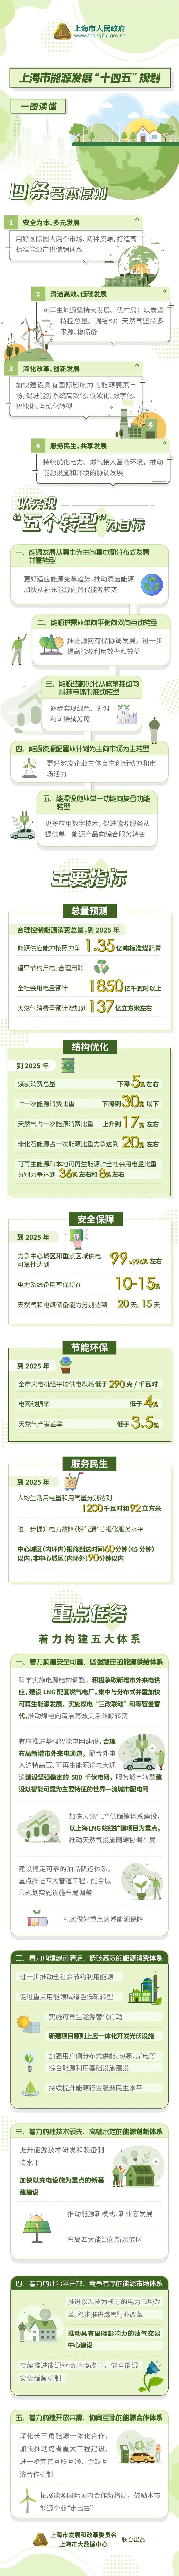 《上海市能源发展“十四五”规划》发布！